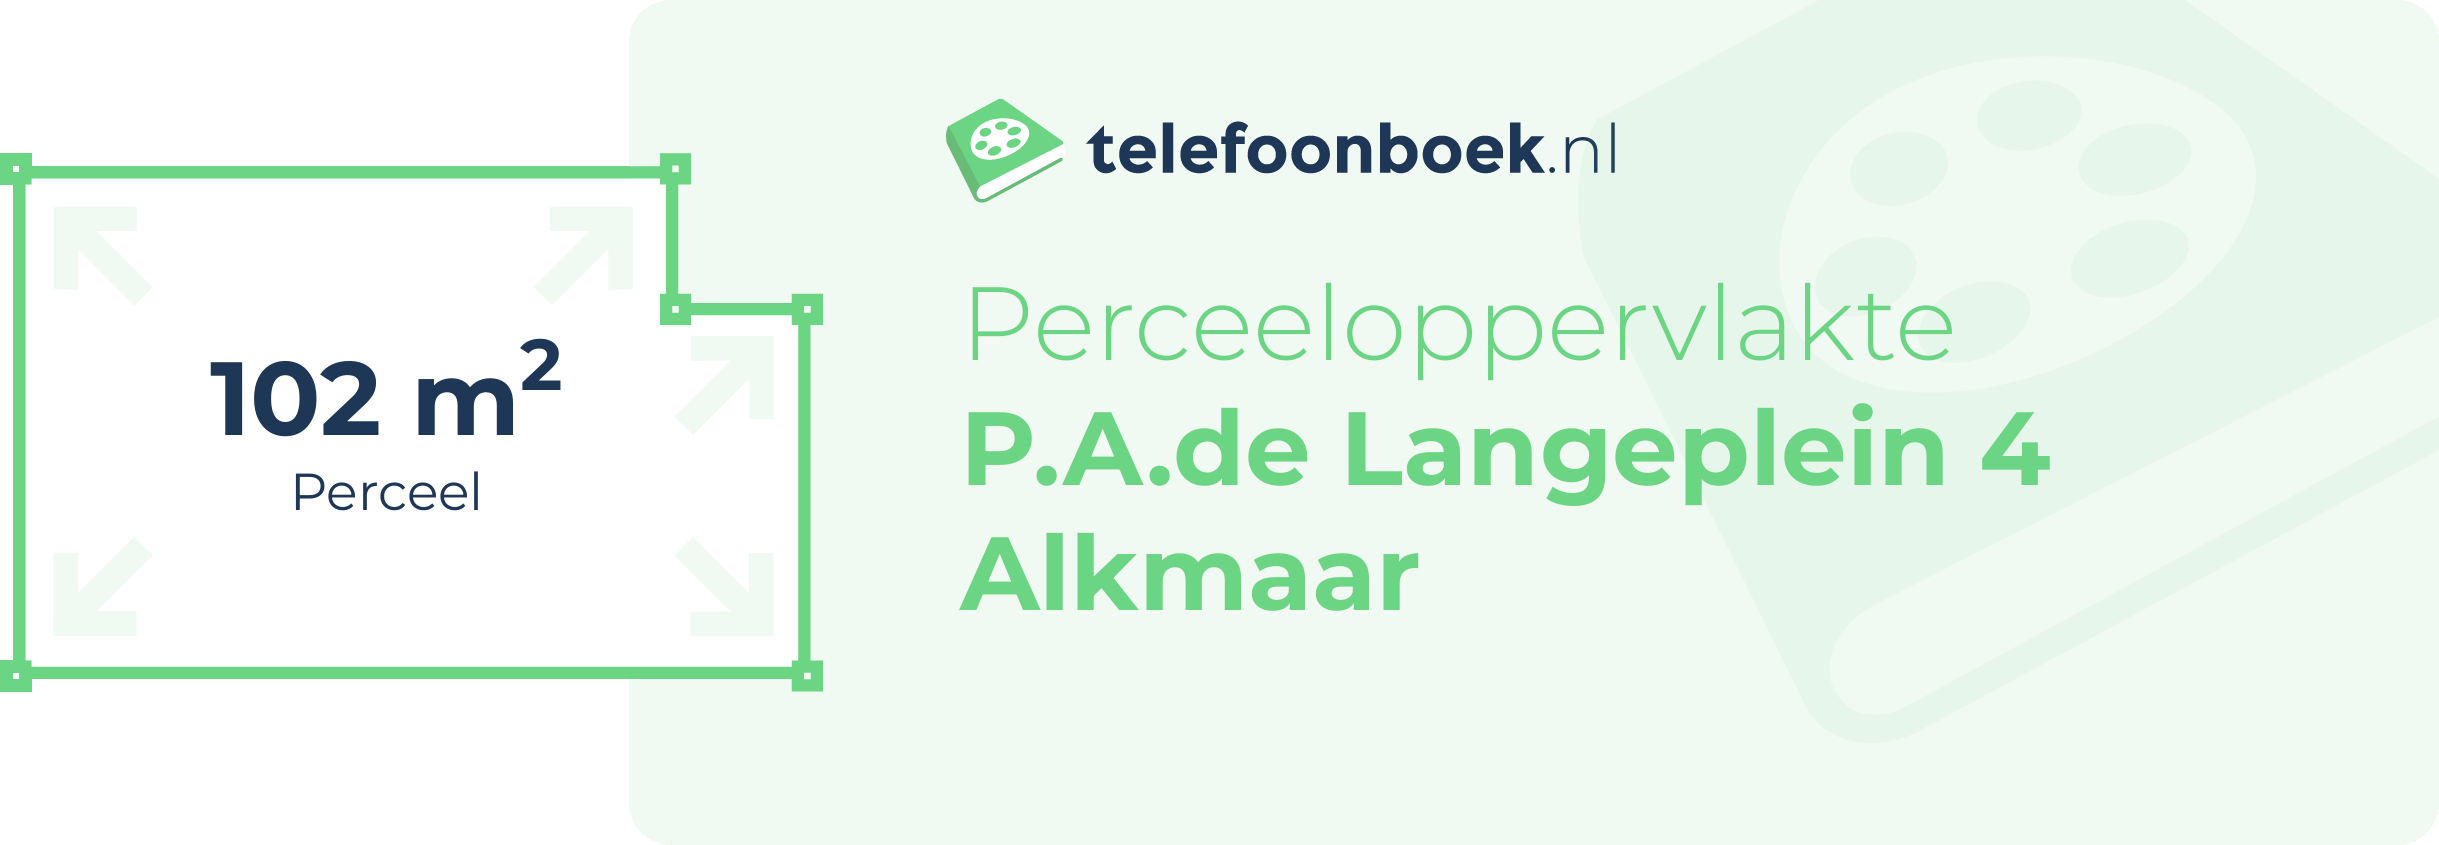 Perceeloppervlakte P.A.de Langeplein 4 Alkmaar